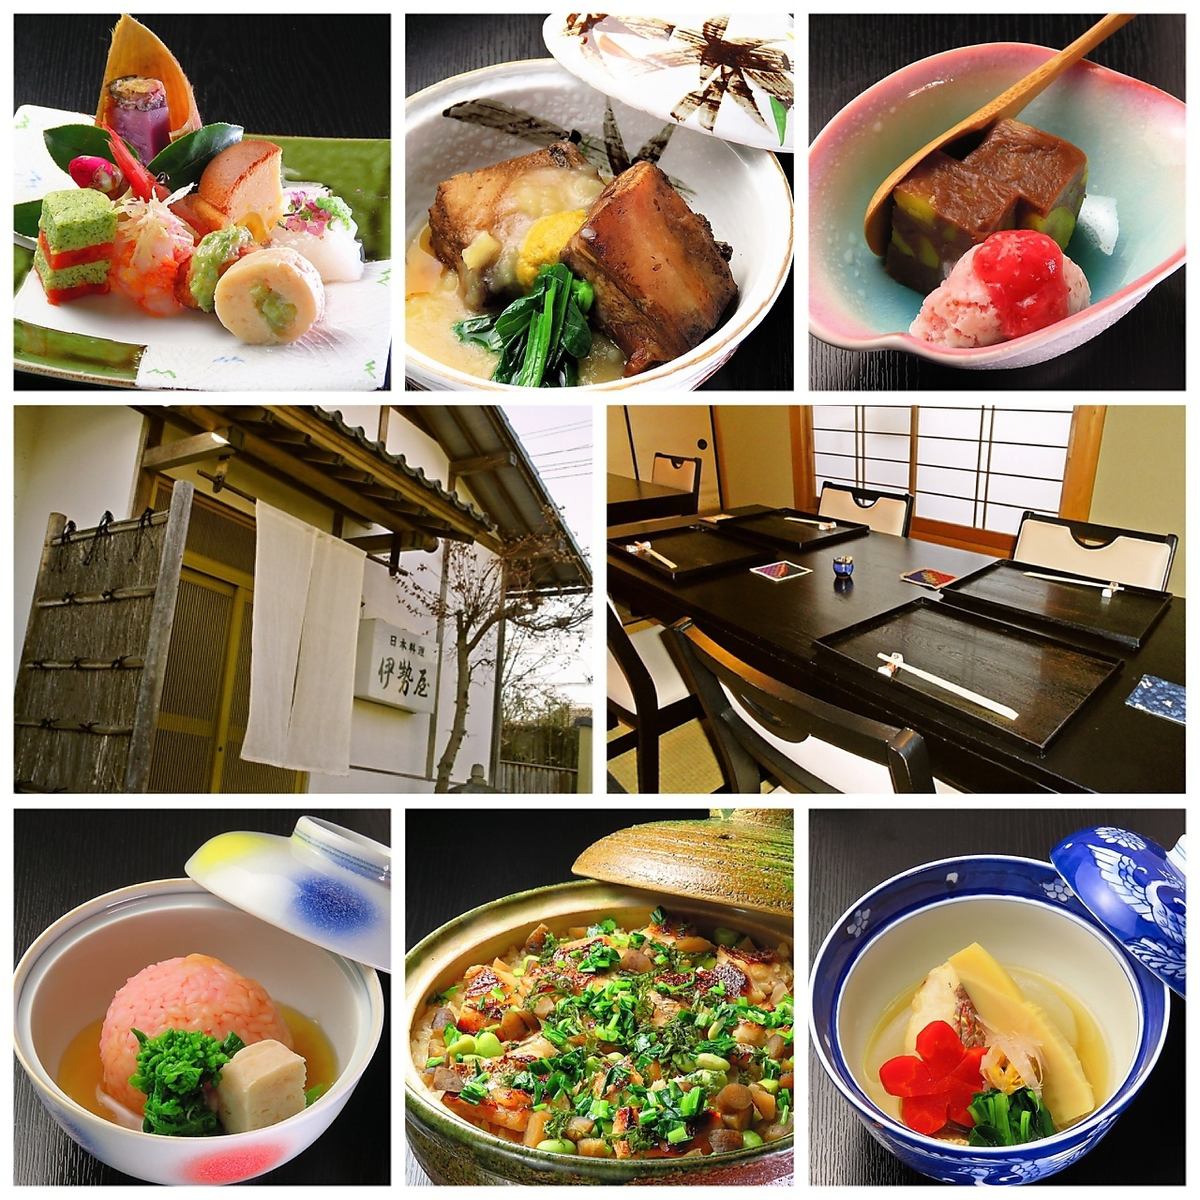 这是一家正宗的怀石料理/日本餐厅，使用天然食材，由接受过正宗京都料理培训的店主烹制。